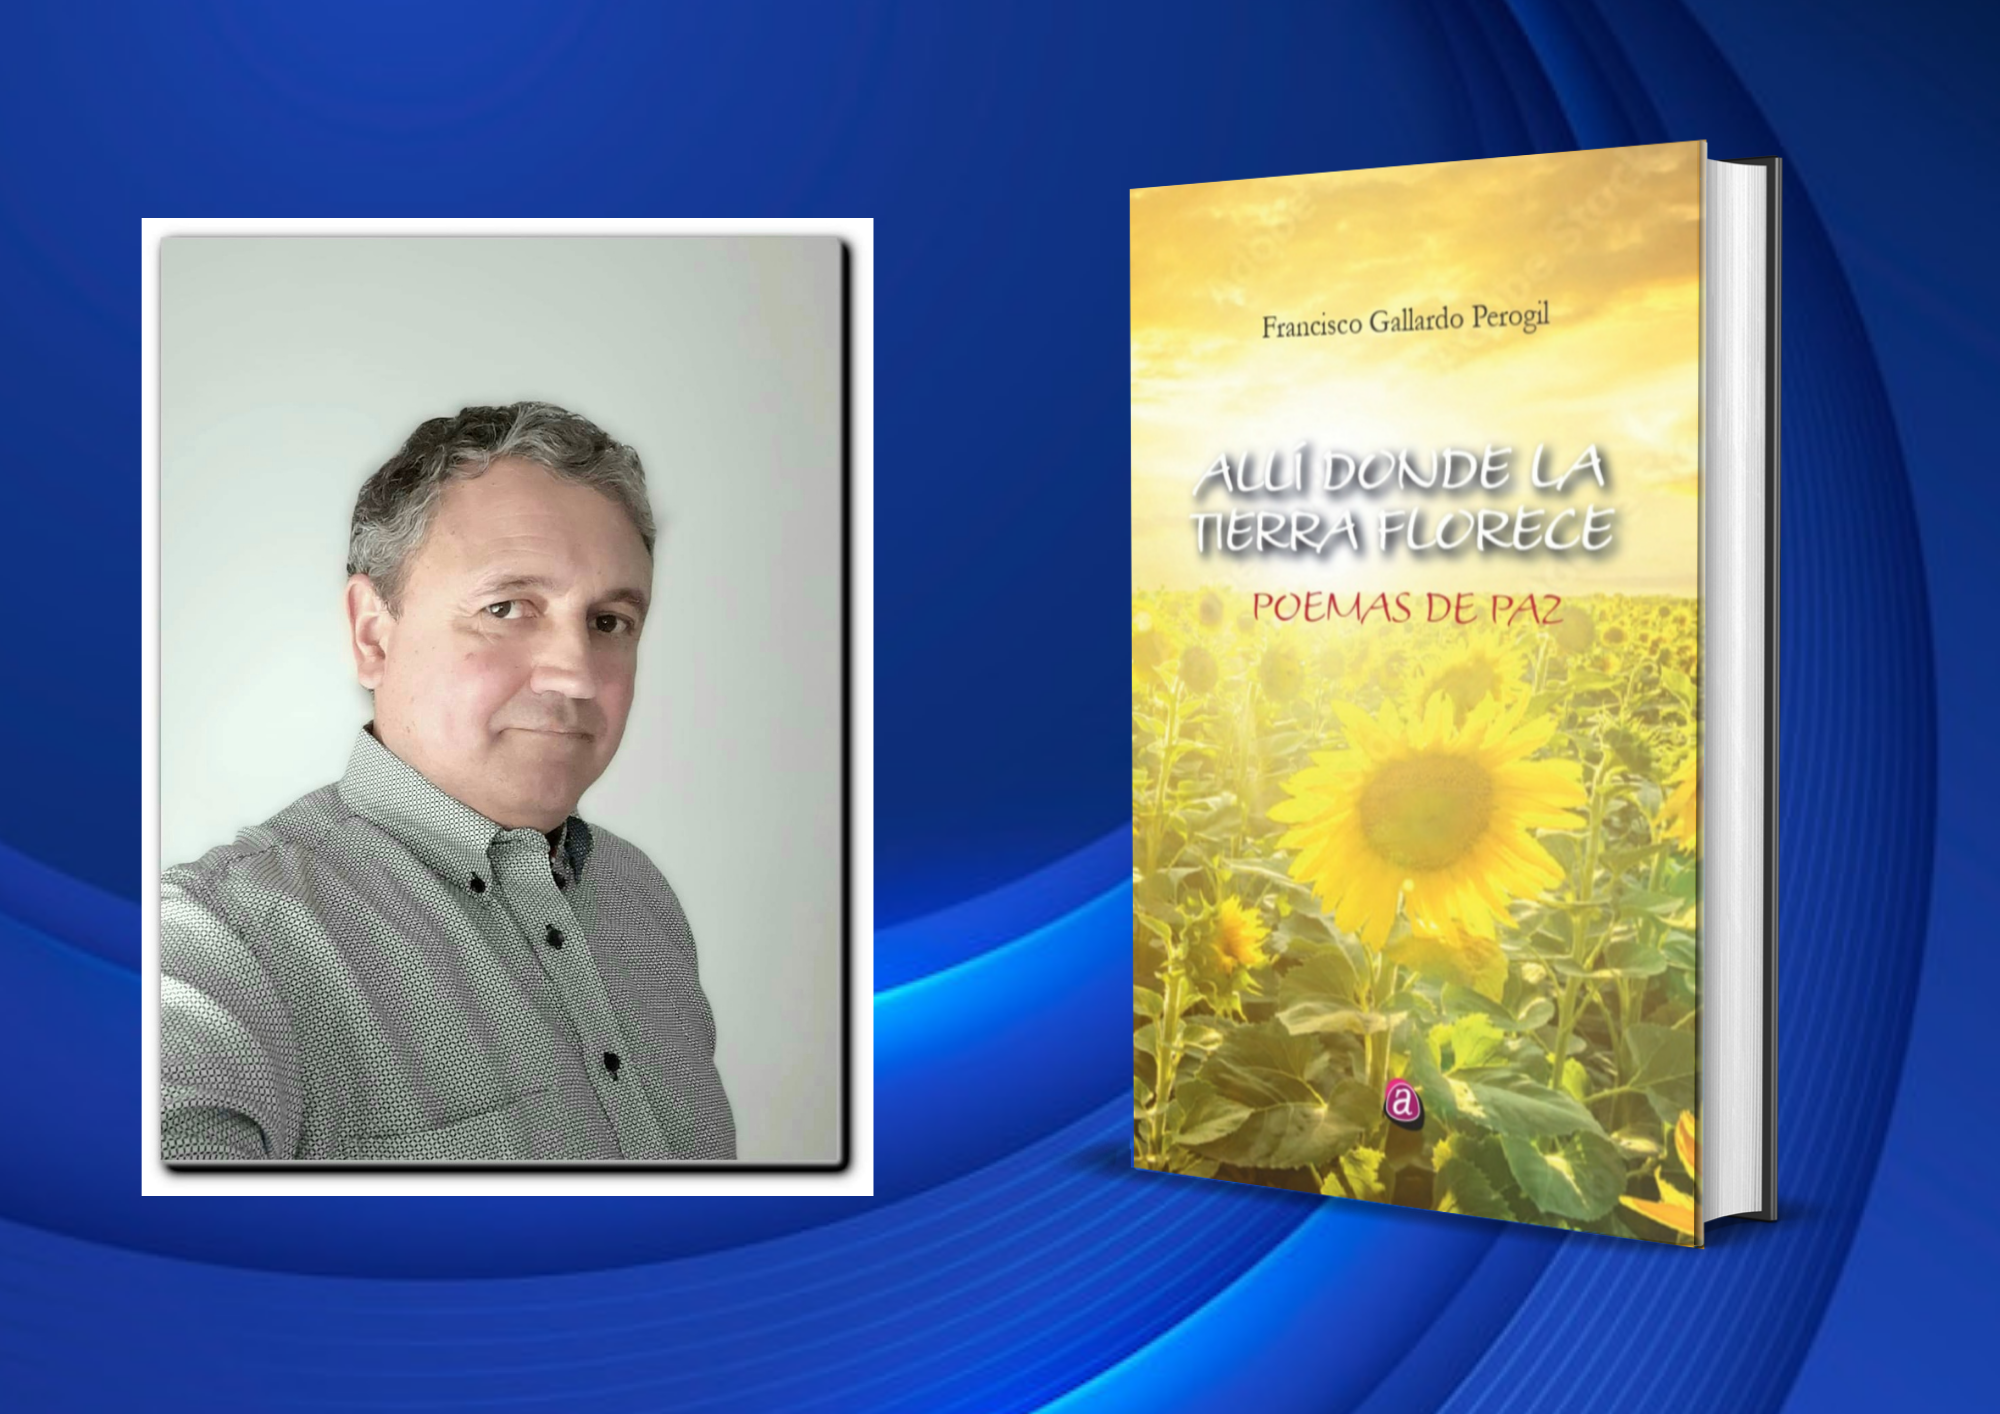 Francisco Gallardo Perogil presenta su nueva obra literaria: “Allí donde la tierra florece”. Poemas de paz.